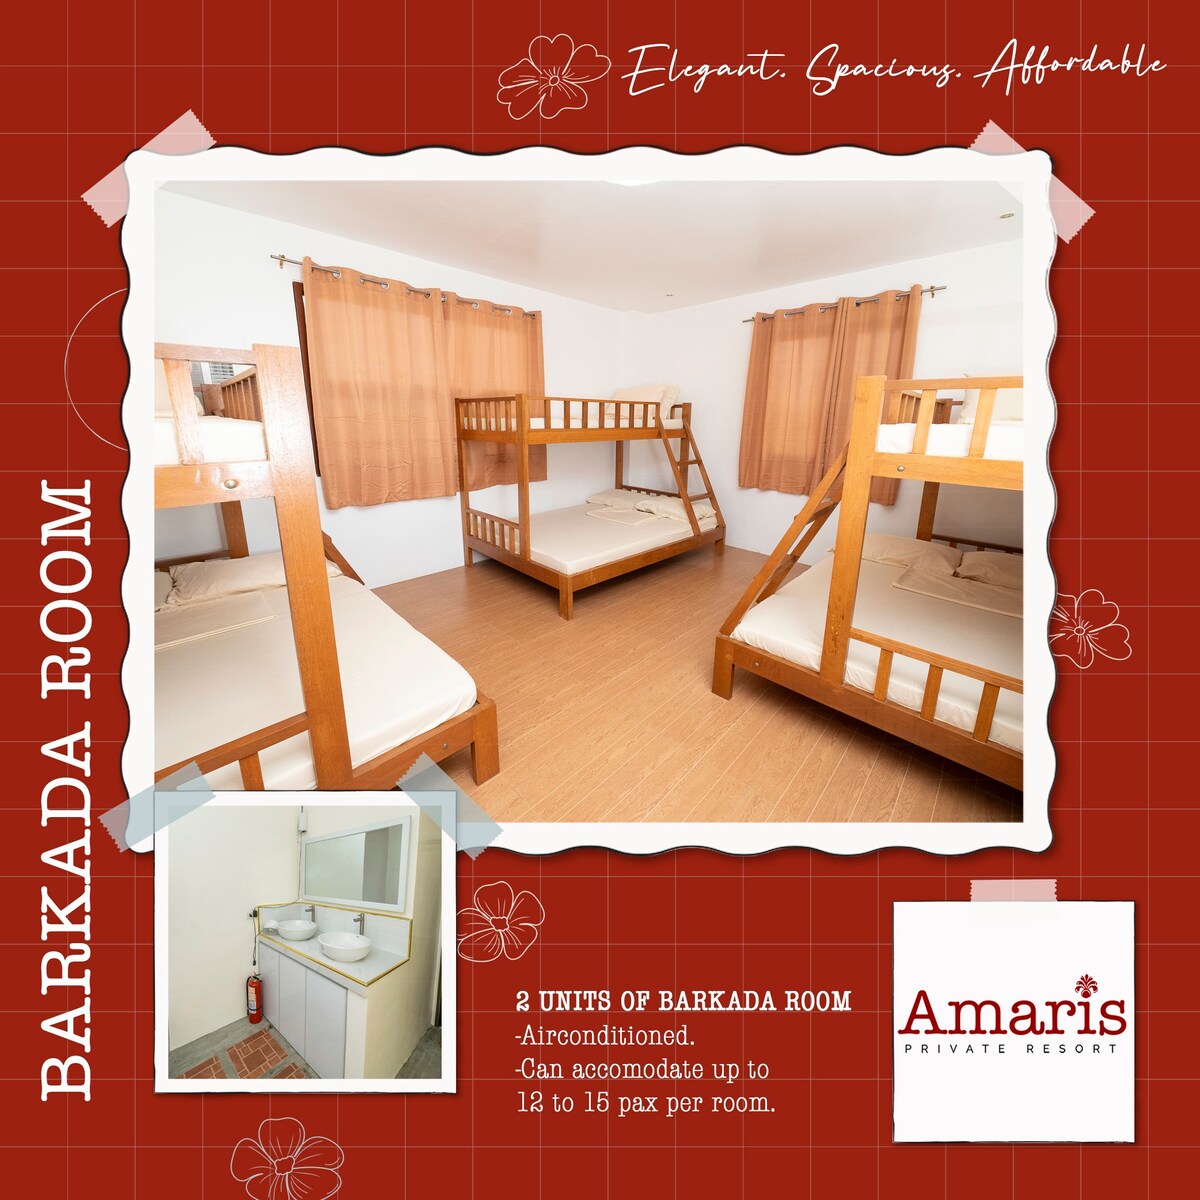 Amaris Private Resort